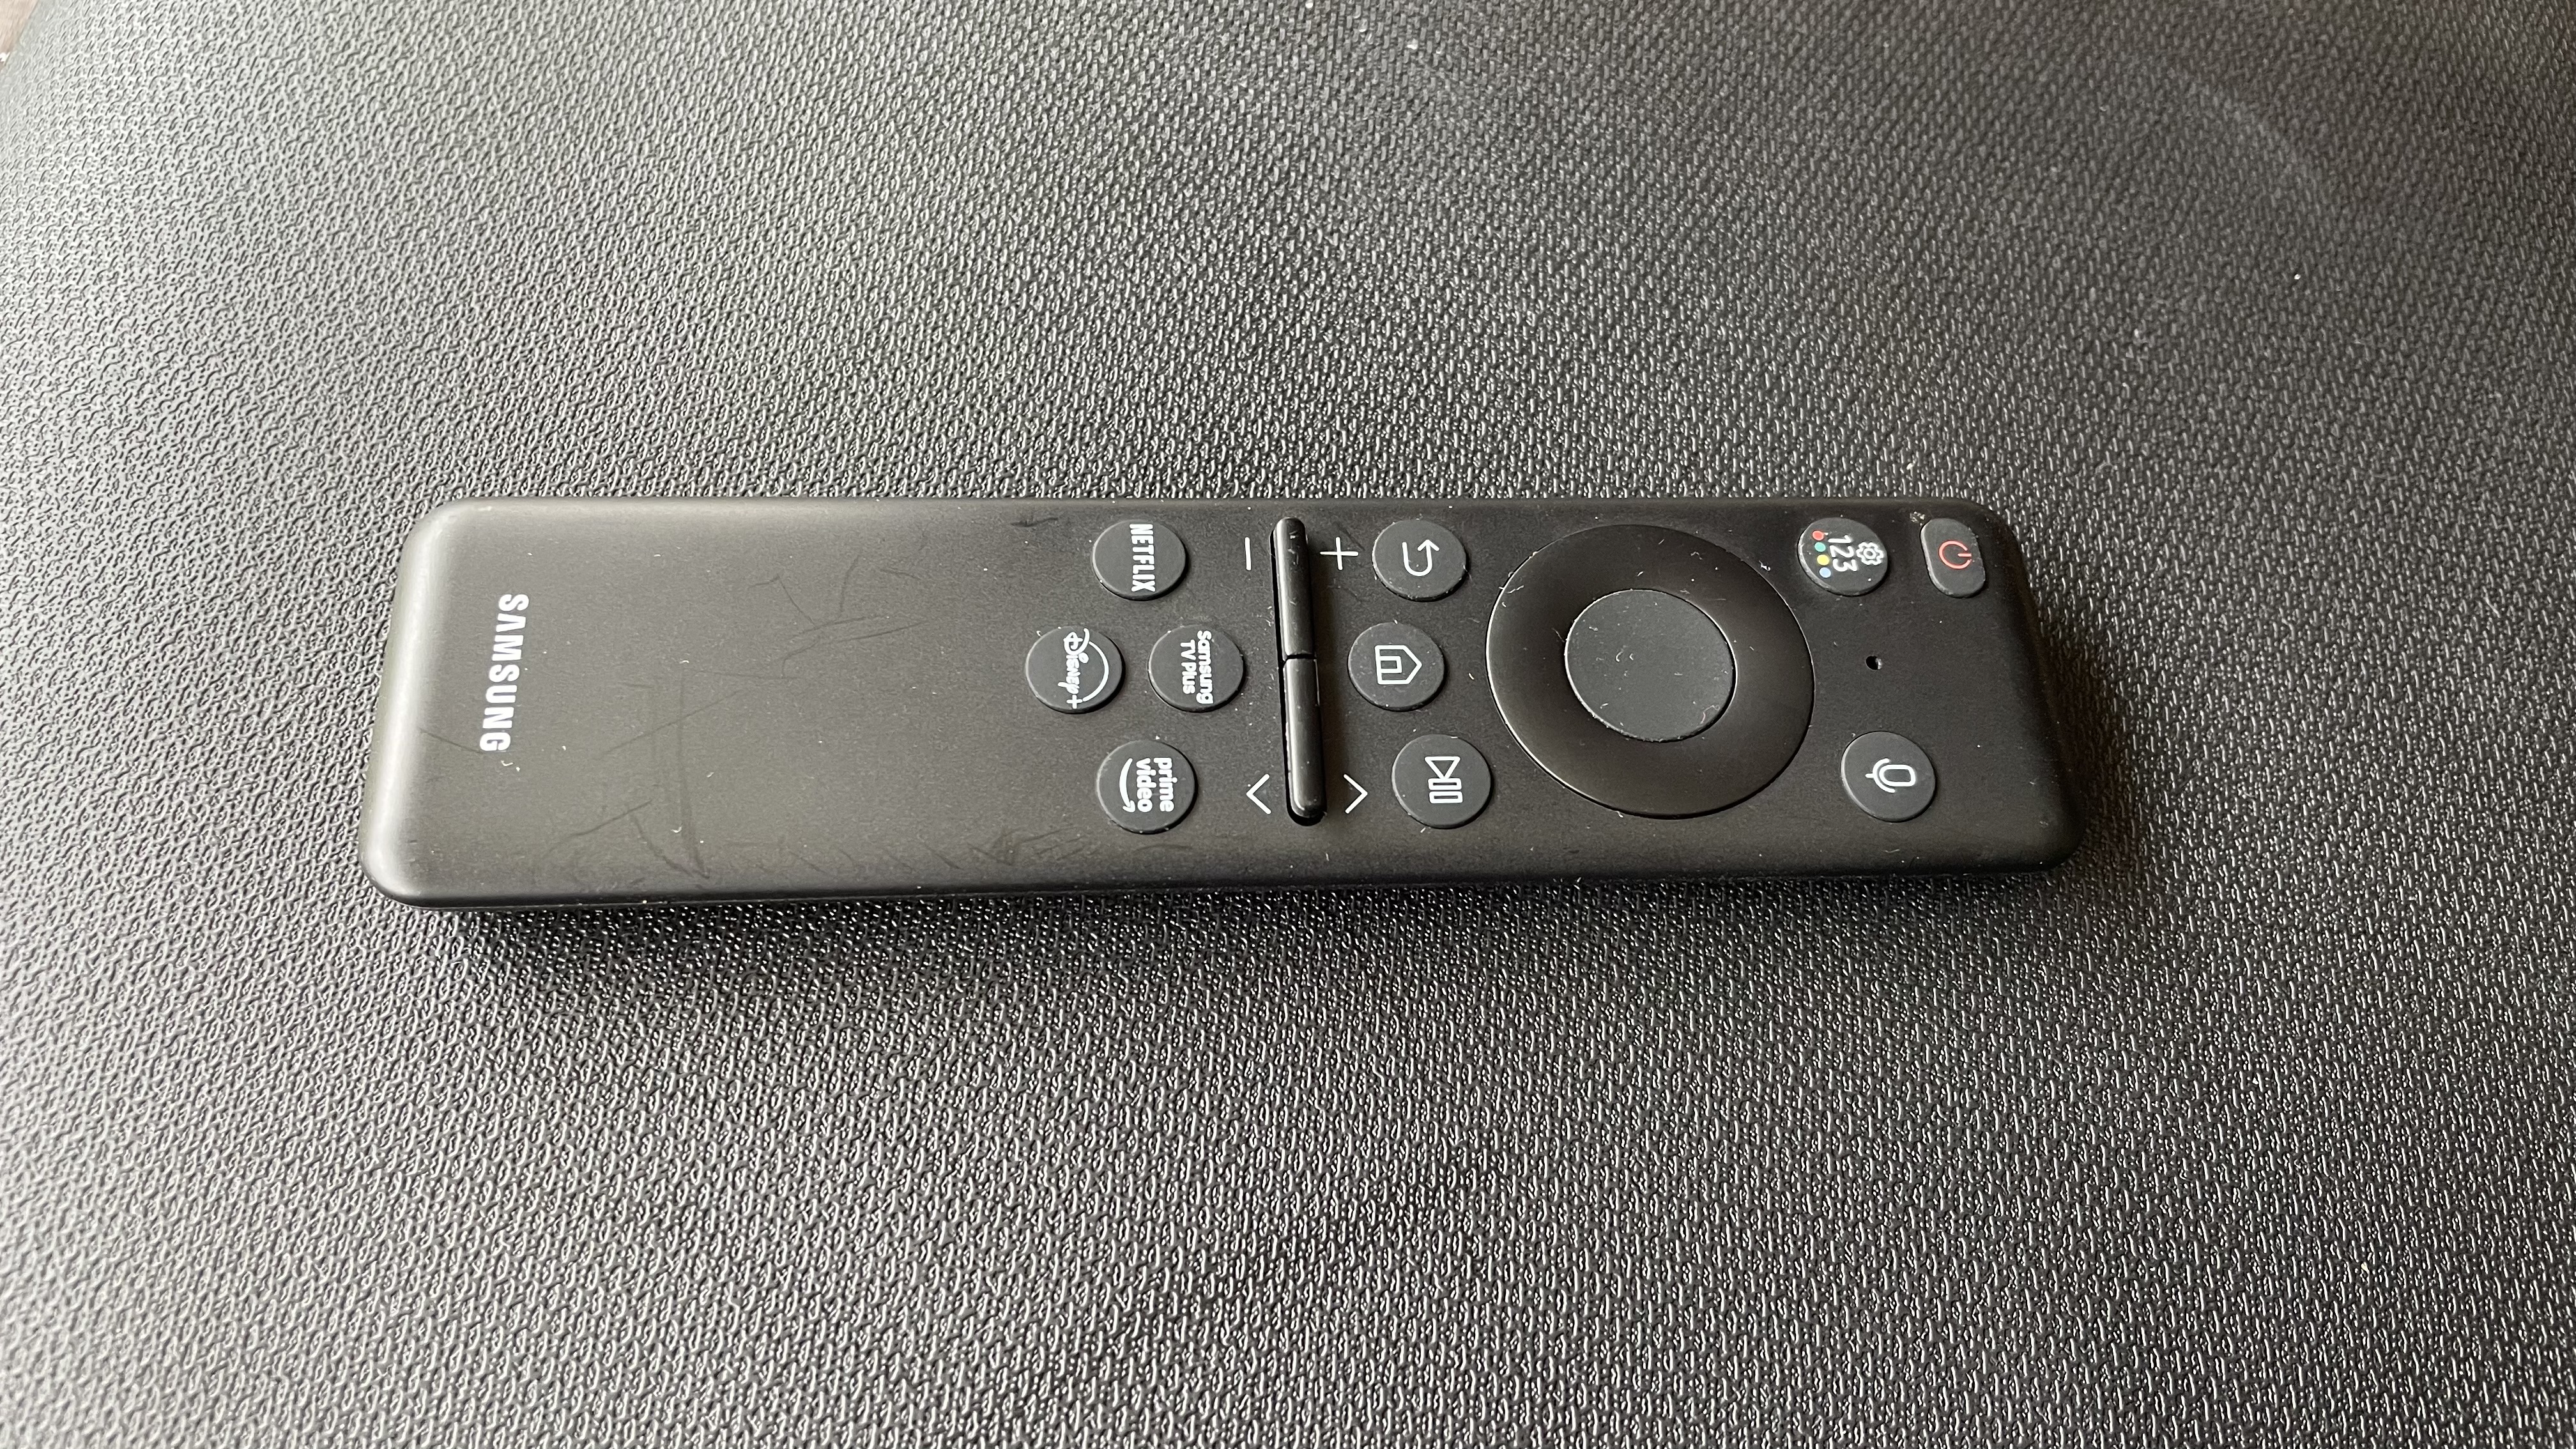 Samsung QN900C small solar remote control